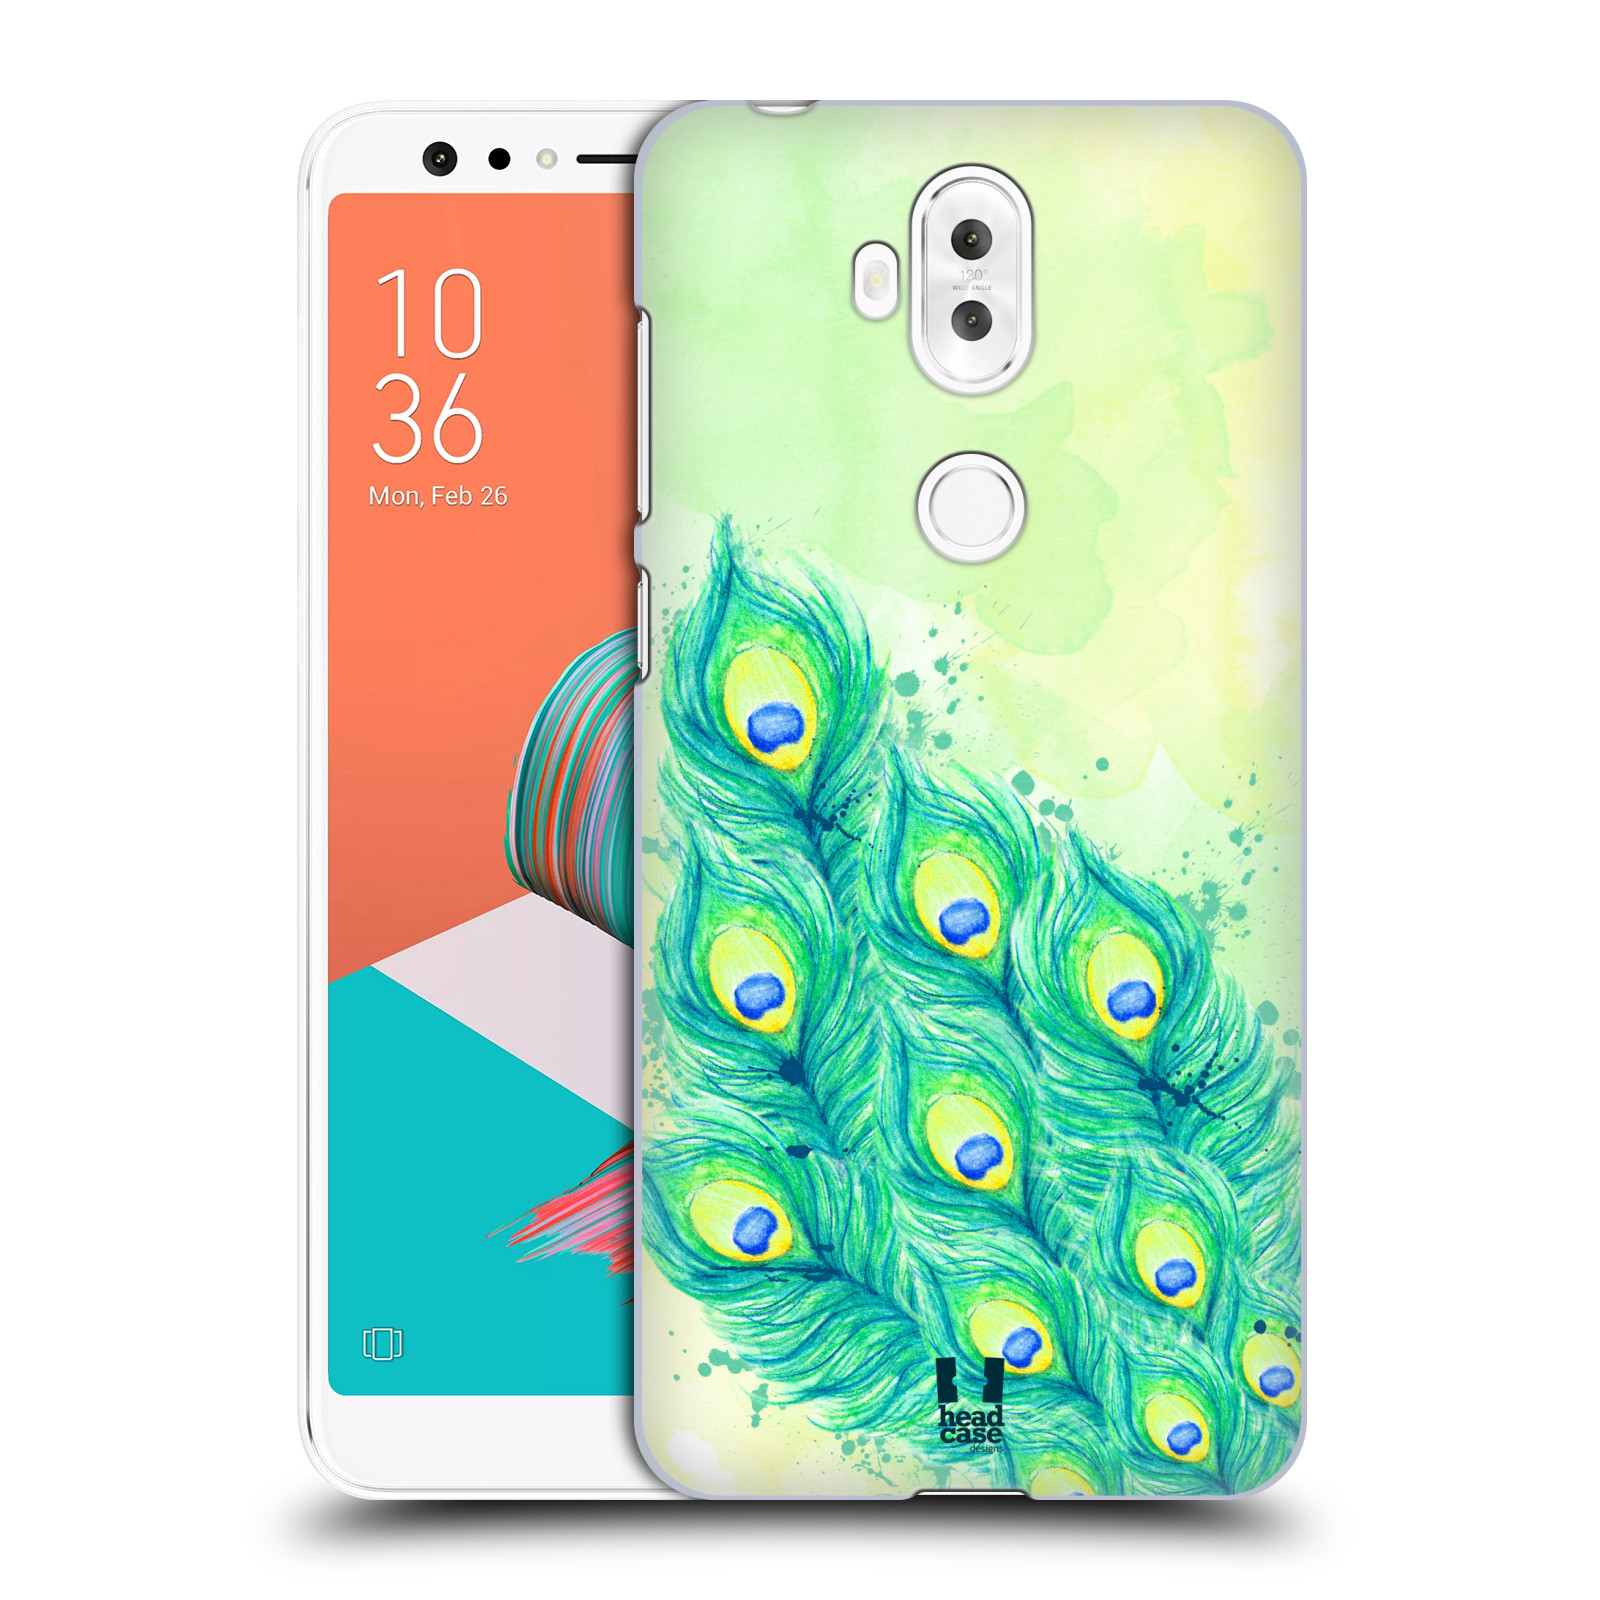 HEAD CASE plastový obal na mobil Asus Zenfone 5 LITE ZC600KL vzor Paví pírka barevná MODRÁ A ZELENÁ